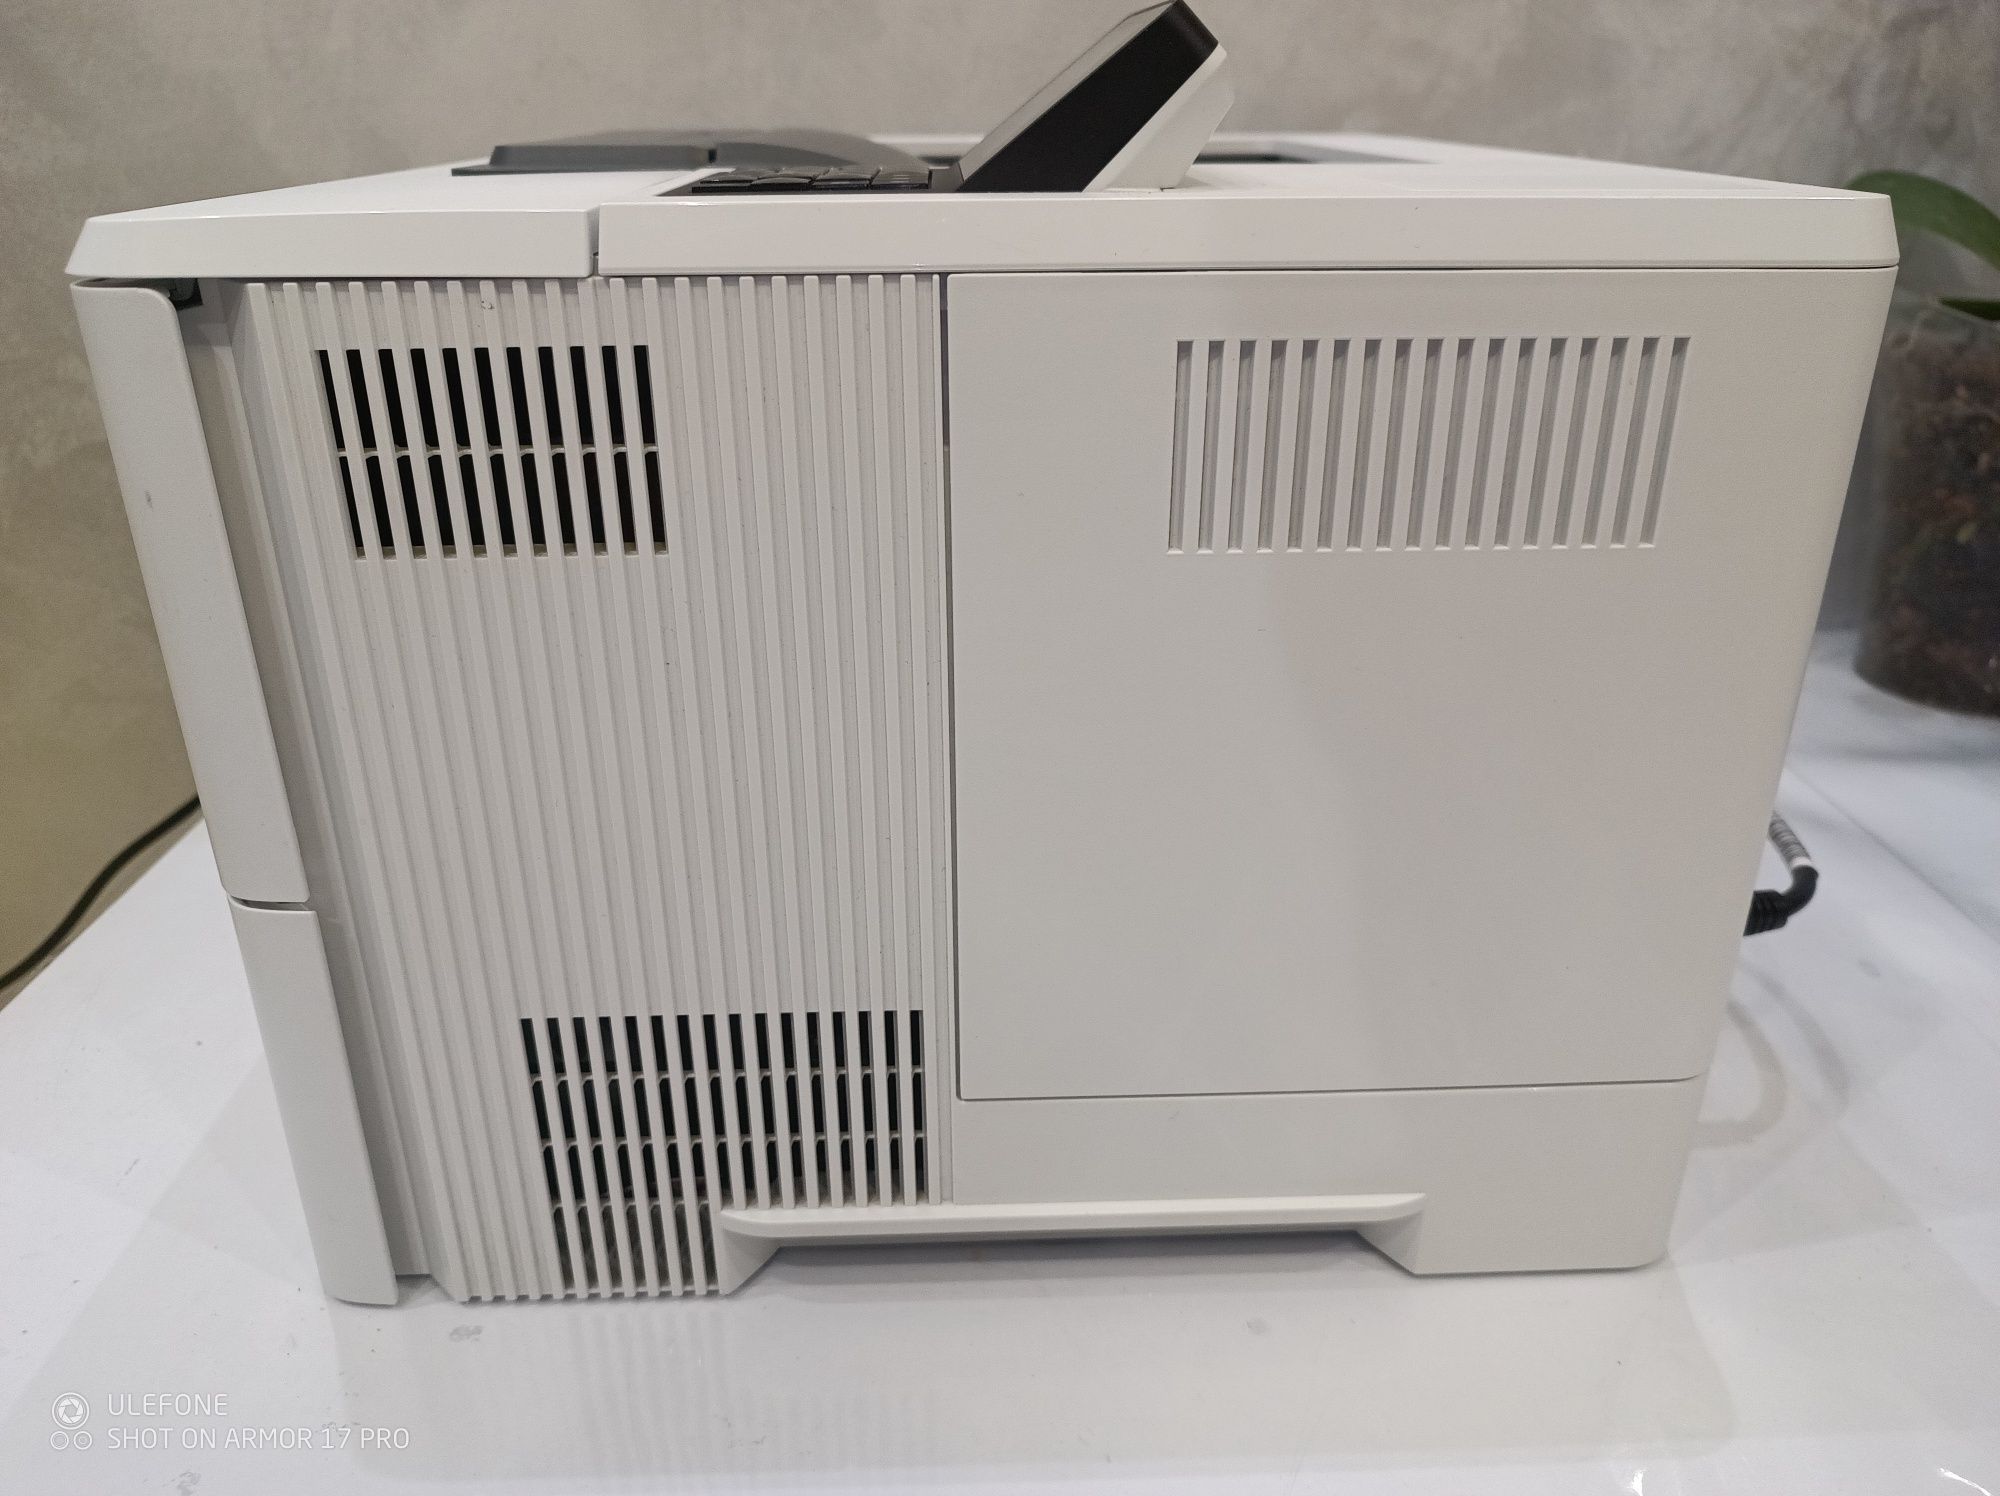 Принтер лазерний монохромний HP LaserJet Enterprise M507dn (1PV87A)